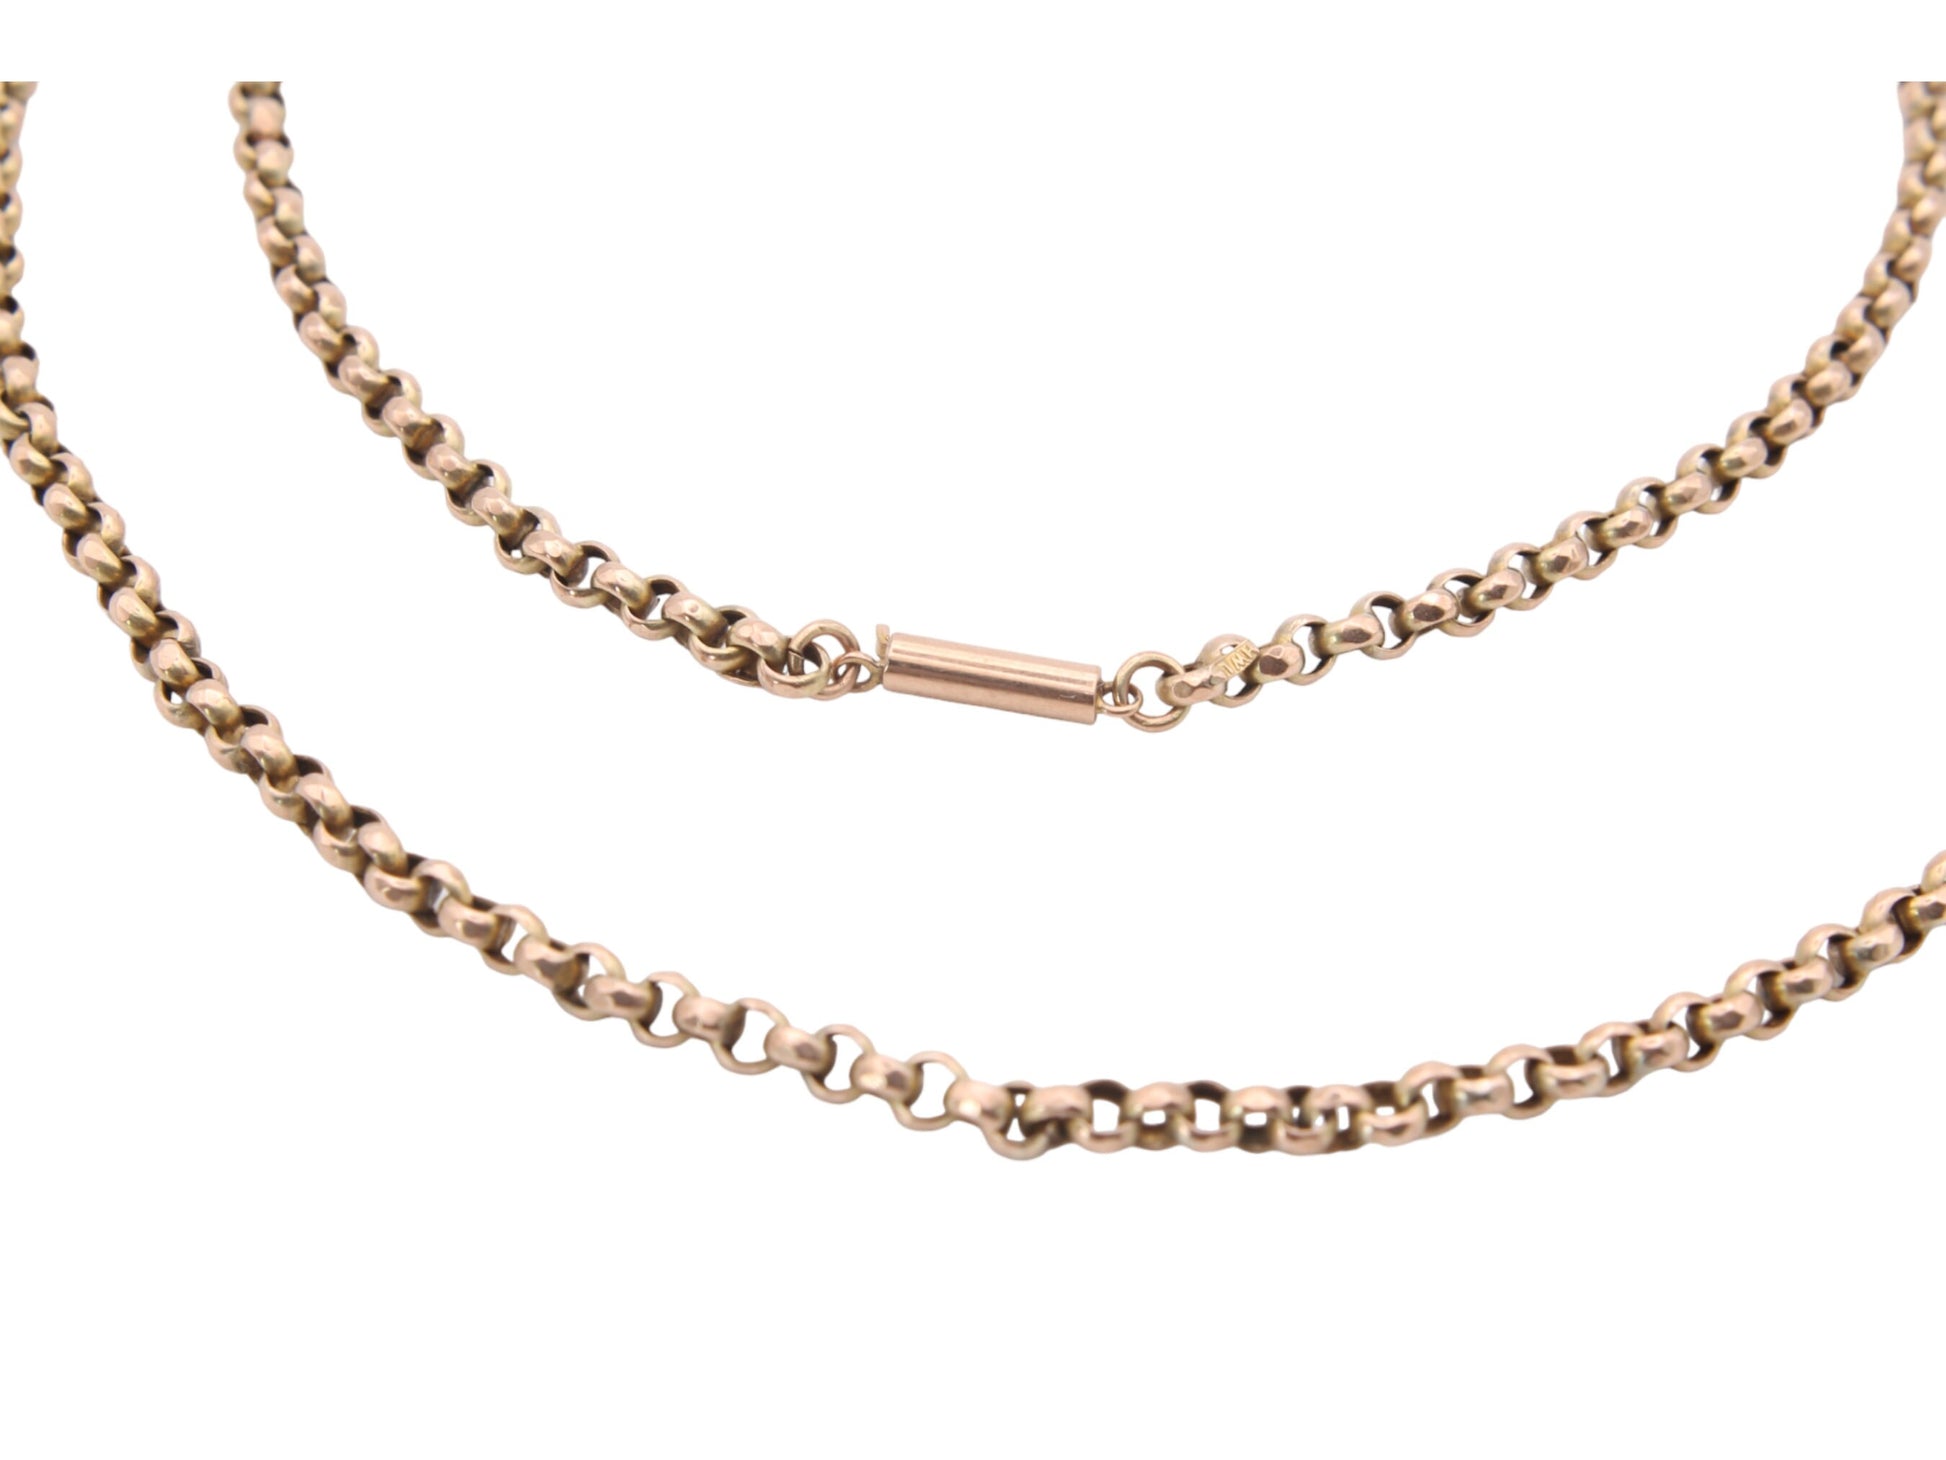 Antique-9ct-Gold-Faceted-Belcher-Link-Necklace,-18.5"